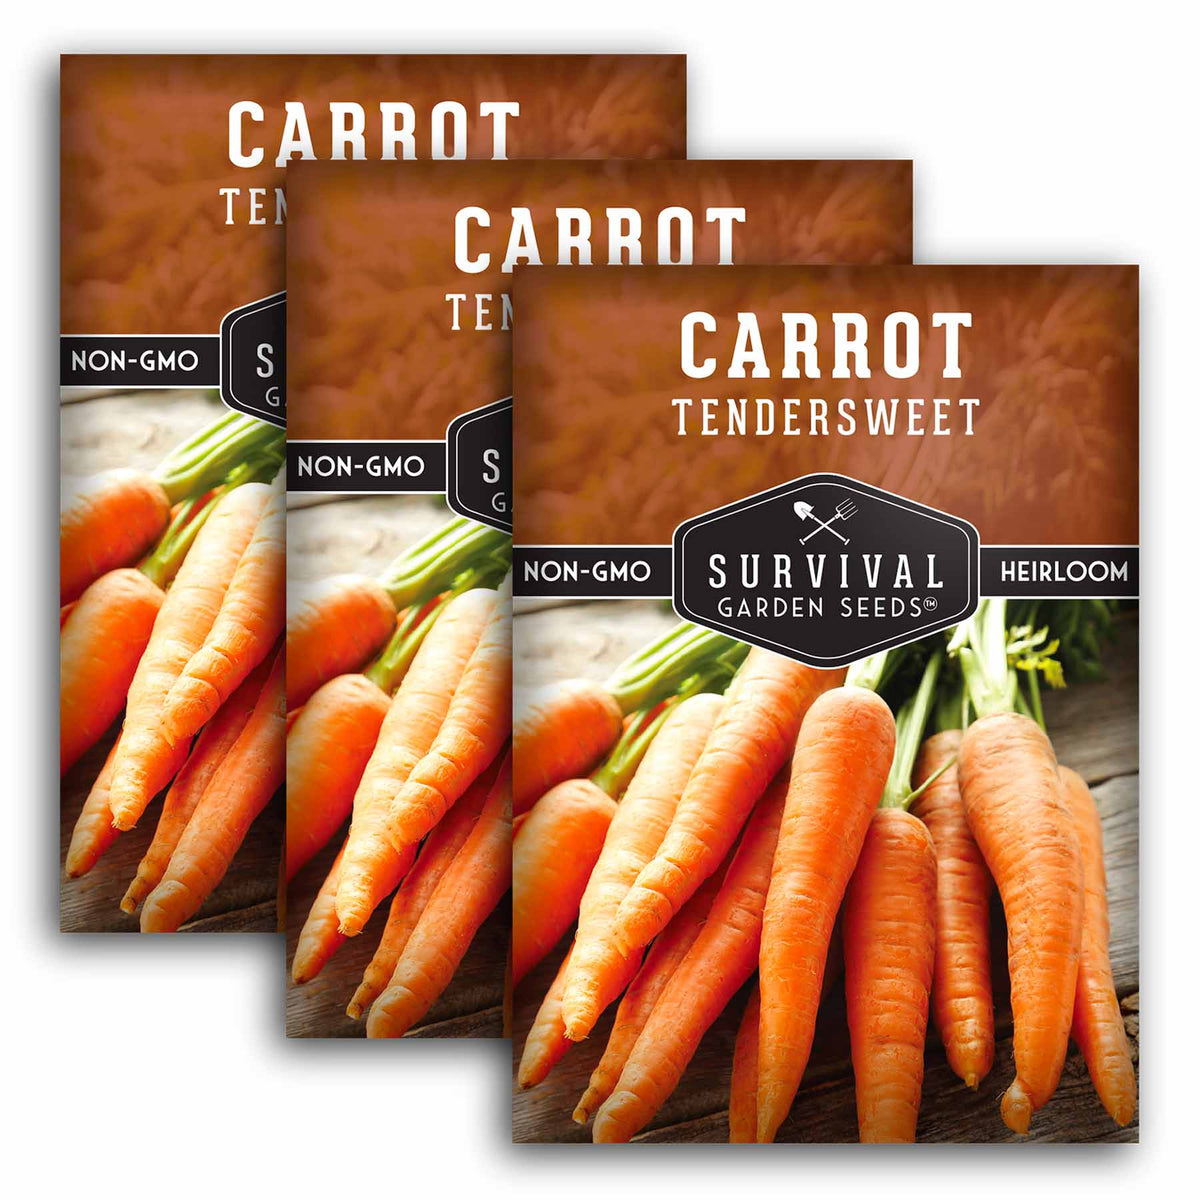 3 Packets of Tendersweet Carrot seeds